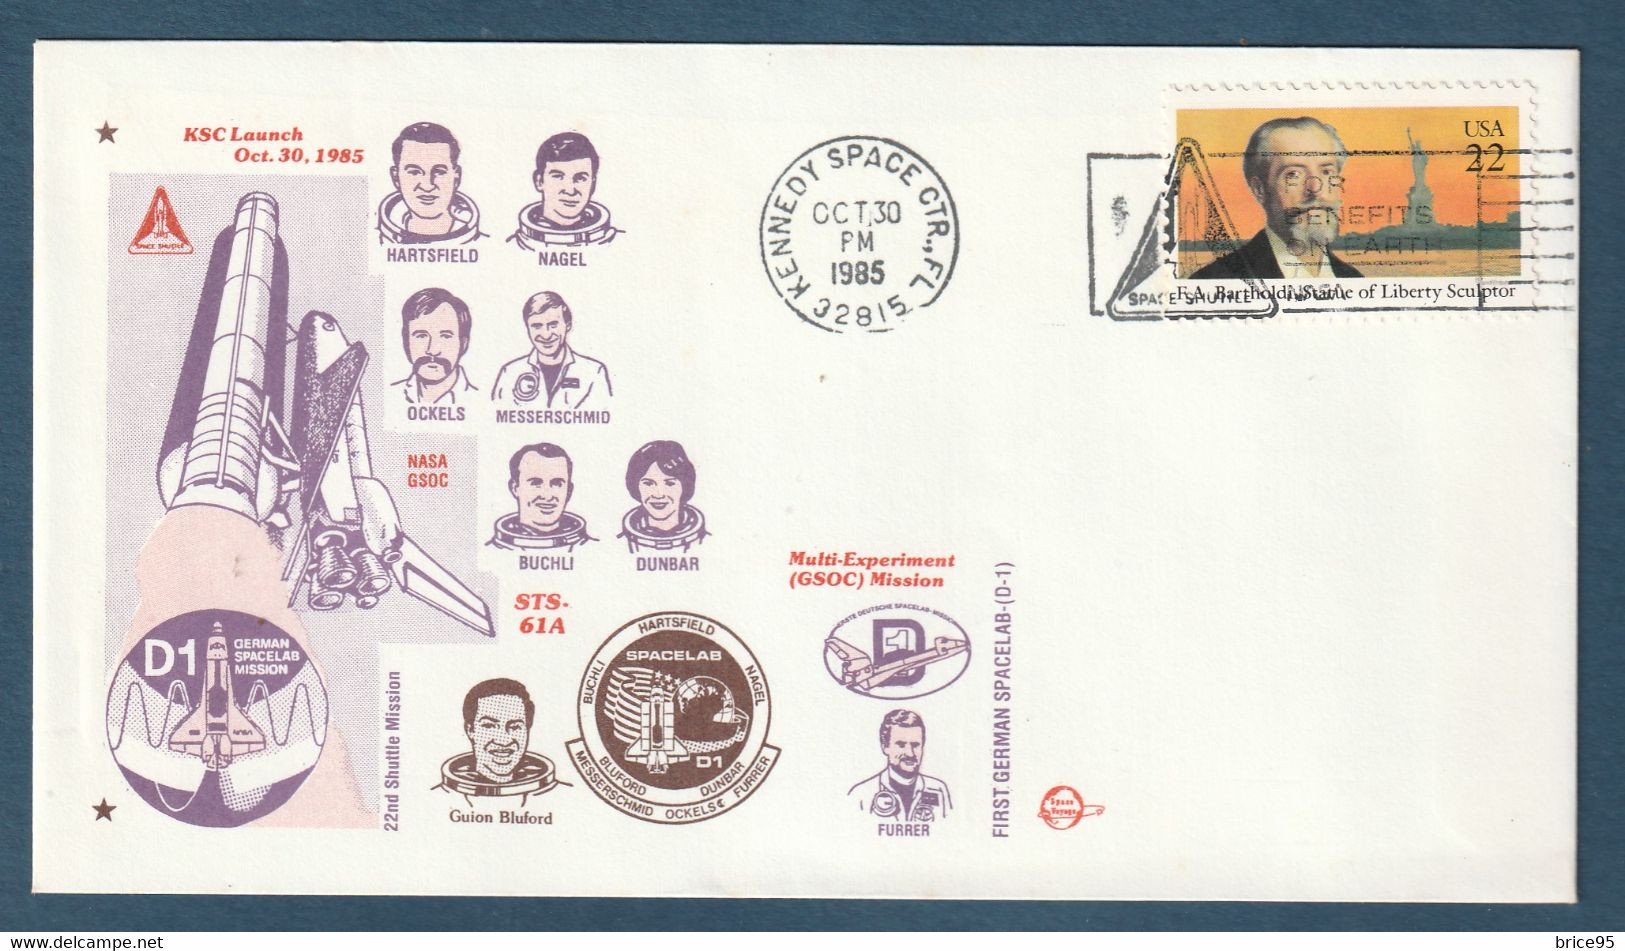 ✈️ Etats Unis - First German - Spacelab - D 1 - Multi Experiment Mission - GSOC - Houston - 1985 ✈️ - Amérique Du Nord